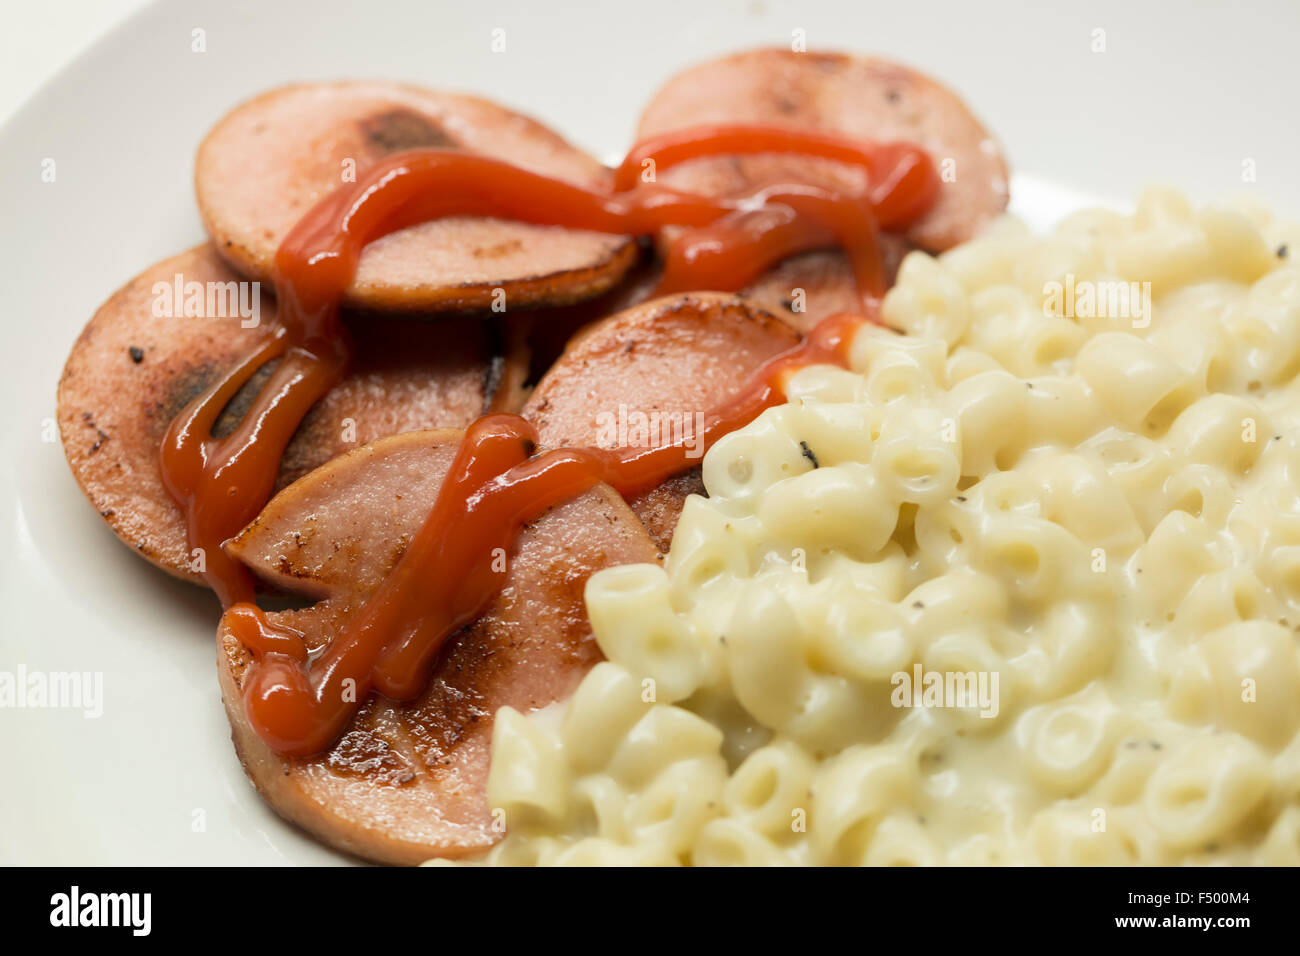 Swedish Falukorv sausage with stewed macaronis Stock Photo